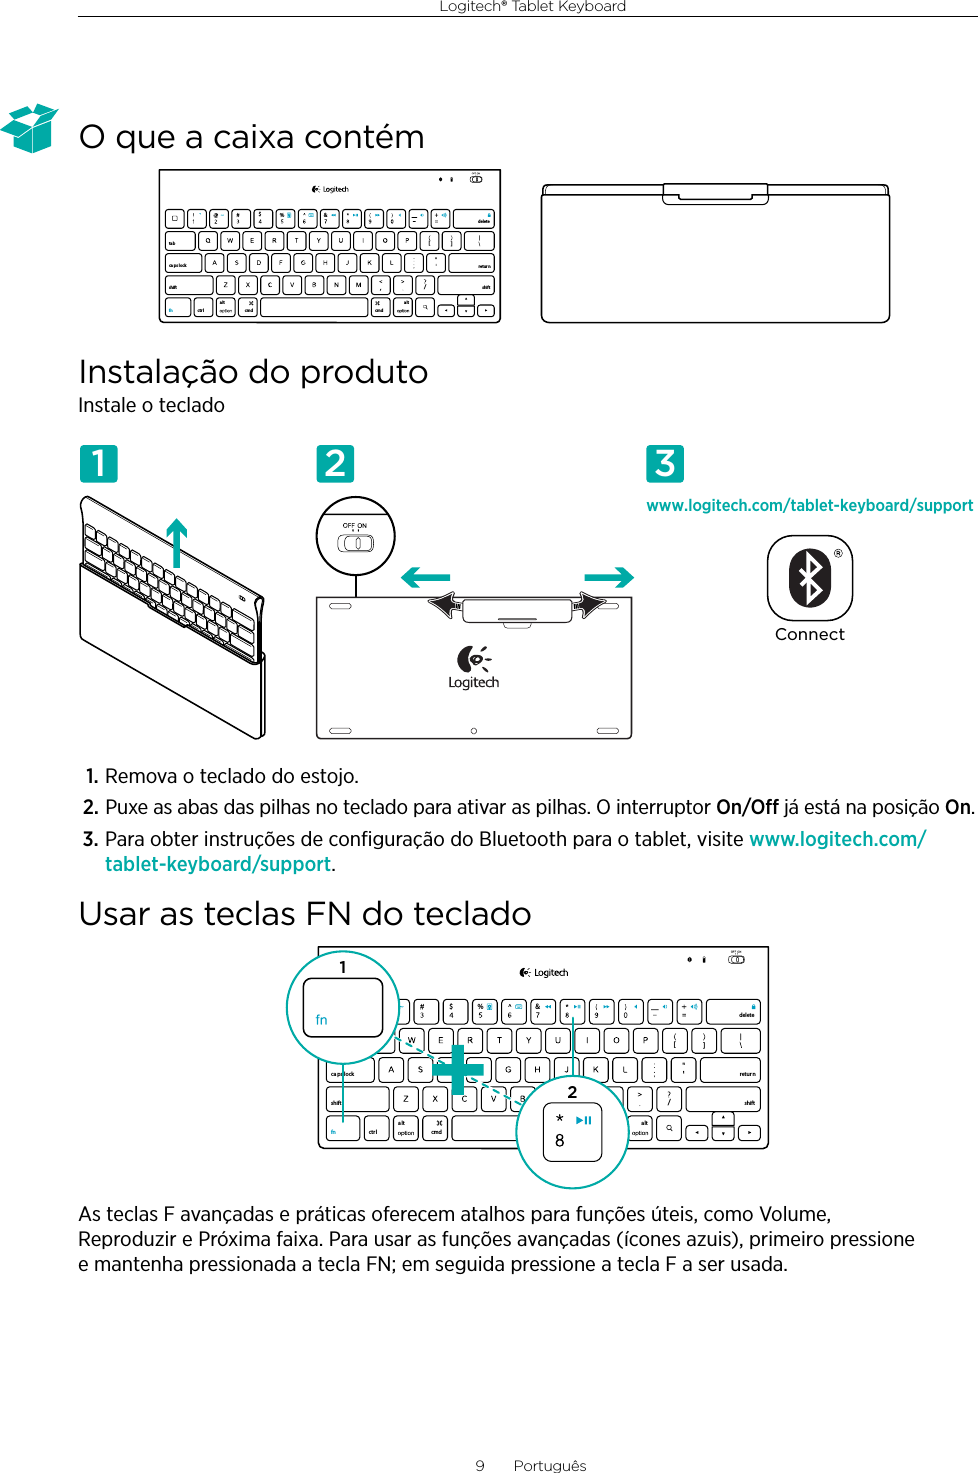 Logitech® Tablet Keyboard9  PortuguêsO que a caixa contémInstalação do produtoInstale o teclado1. Remova o teclado do estojo.2. Puxe as abas das pilhas no teclado para ativar as pilhas. O interruptor On/O já está na posição On.3. Para obter instruções de conﬁguração do Bluetooth para o tablet, visite www.logitech.com/tablet-keyboard/support.Usar as teclas FN do tecladoAs teclas F avançadas e práticas oferecem atalhos para funções úteis, como Volume, Reproduzir e Próxima faixa. Para usar as funções avançadas (ícones azuis), primeiro pressione e mantenha pressionada a tecla FN; em seguida pressione a tecla F a ser usada.,/[[&amp;ctr lalt a lttabca ps lockshift shift$%retur ndeletecmd cmdfnwww.logitech.com/tablet-keyboard/supportConnect1 2 3,/[[&amp;ctr lalt alttabca ps lockshift shift$%retur ndeletecmd cmdfn12